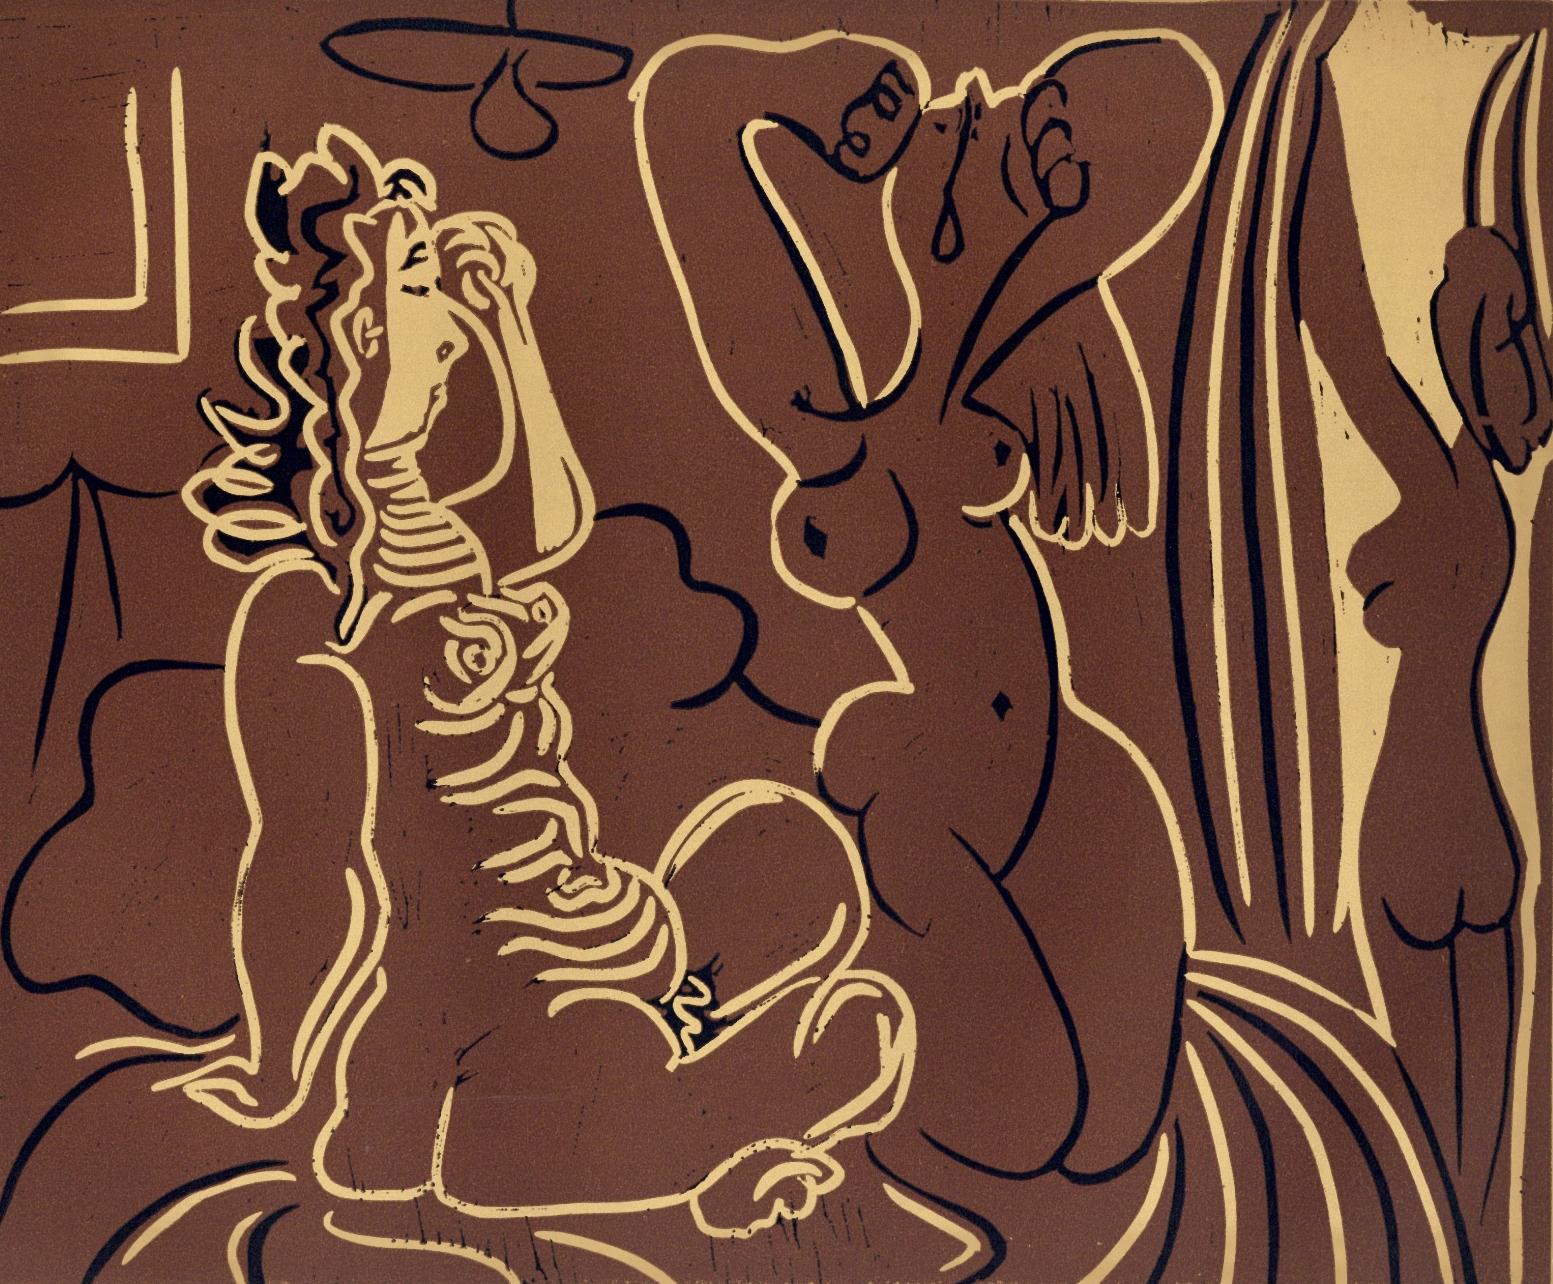 Picasso, Drei aufsteigende Frauen, Pablo Picasso-Linogravuren (nach)